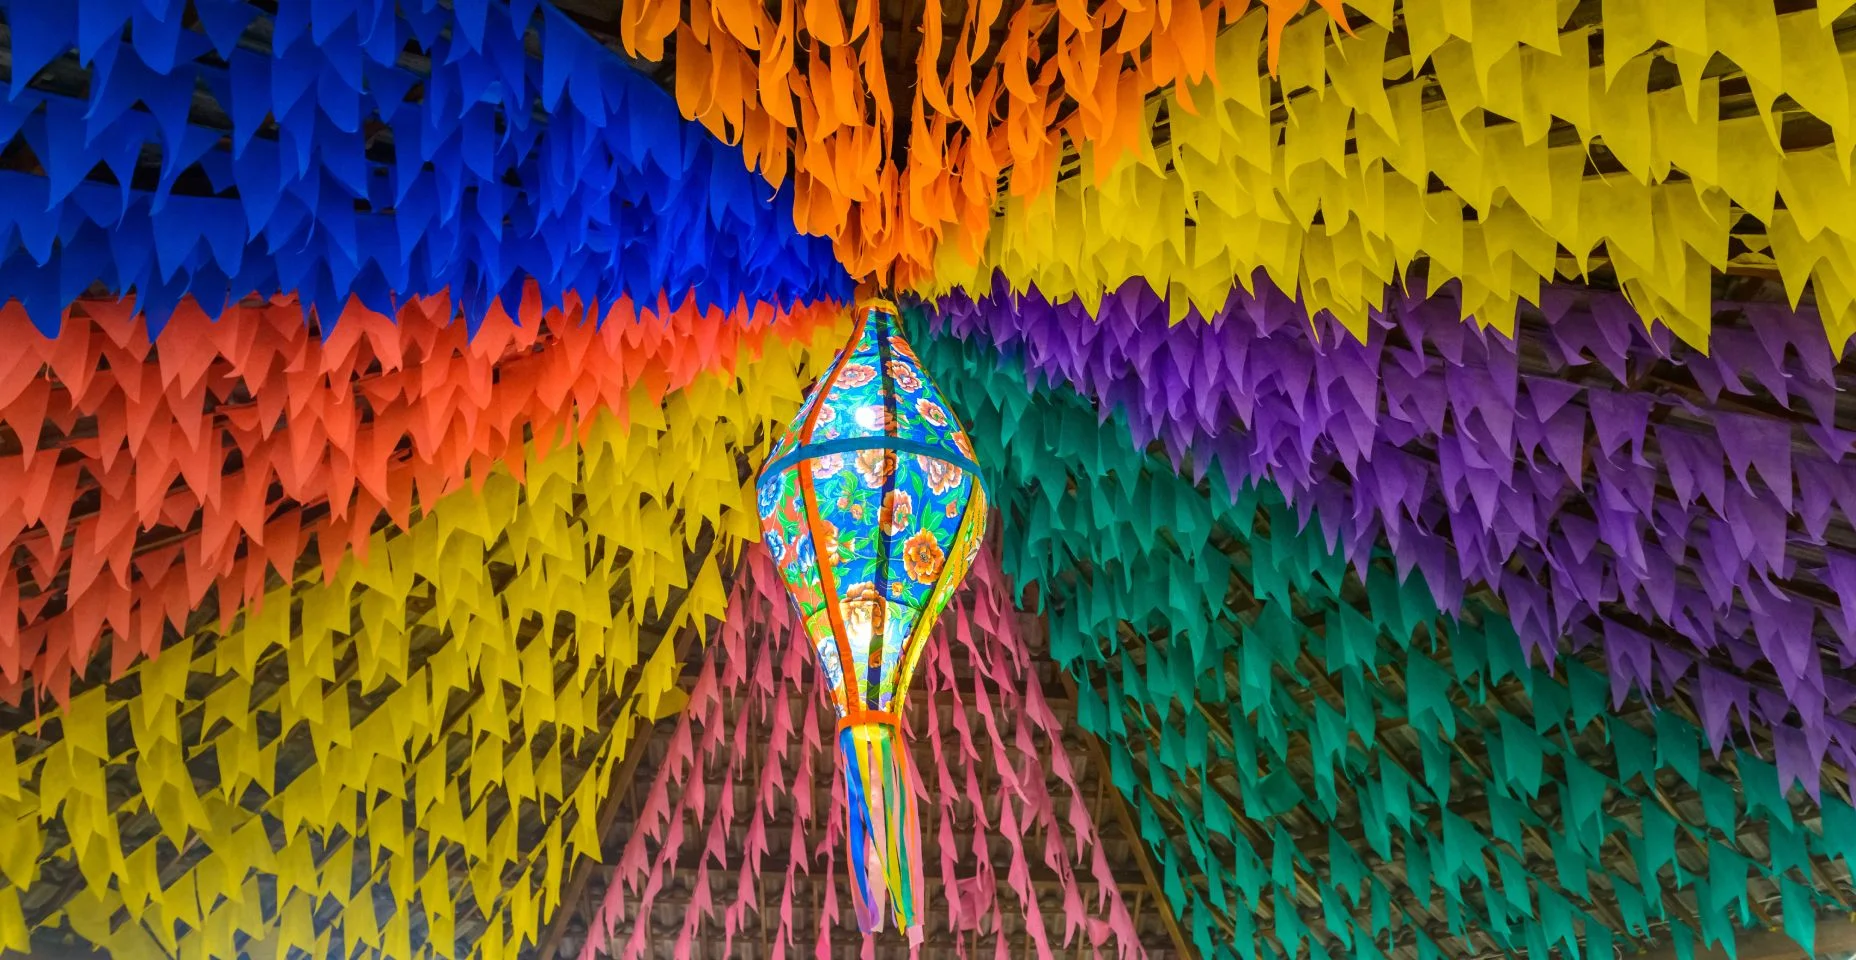 Bandeiras coloridas e balão decorativo para a festa São João, que acontece em junho no nordeste do Brasil.